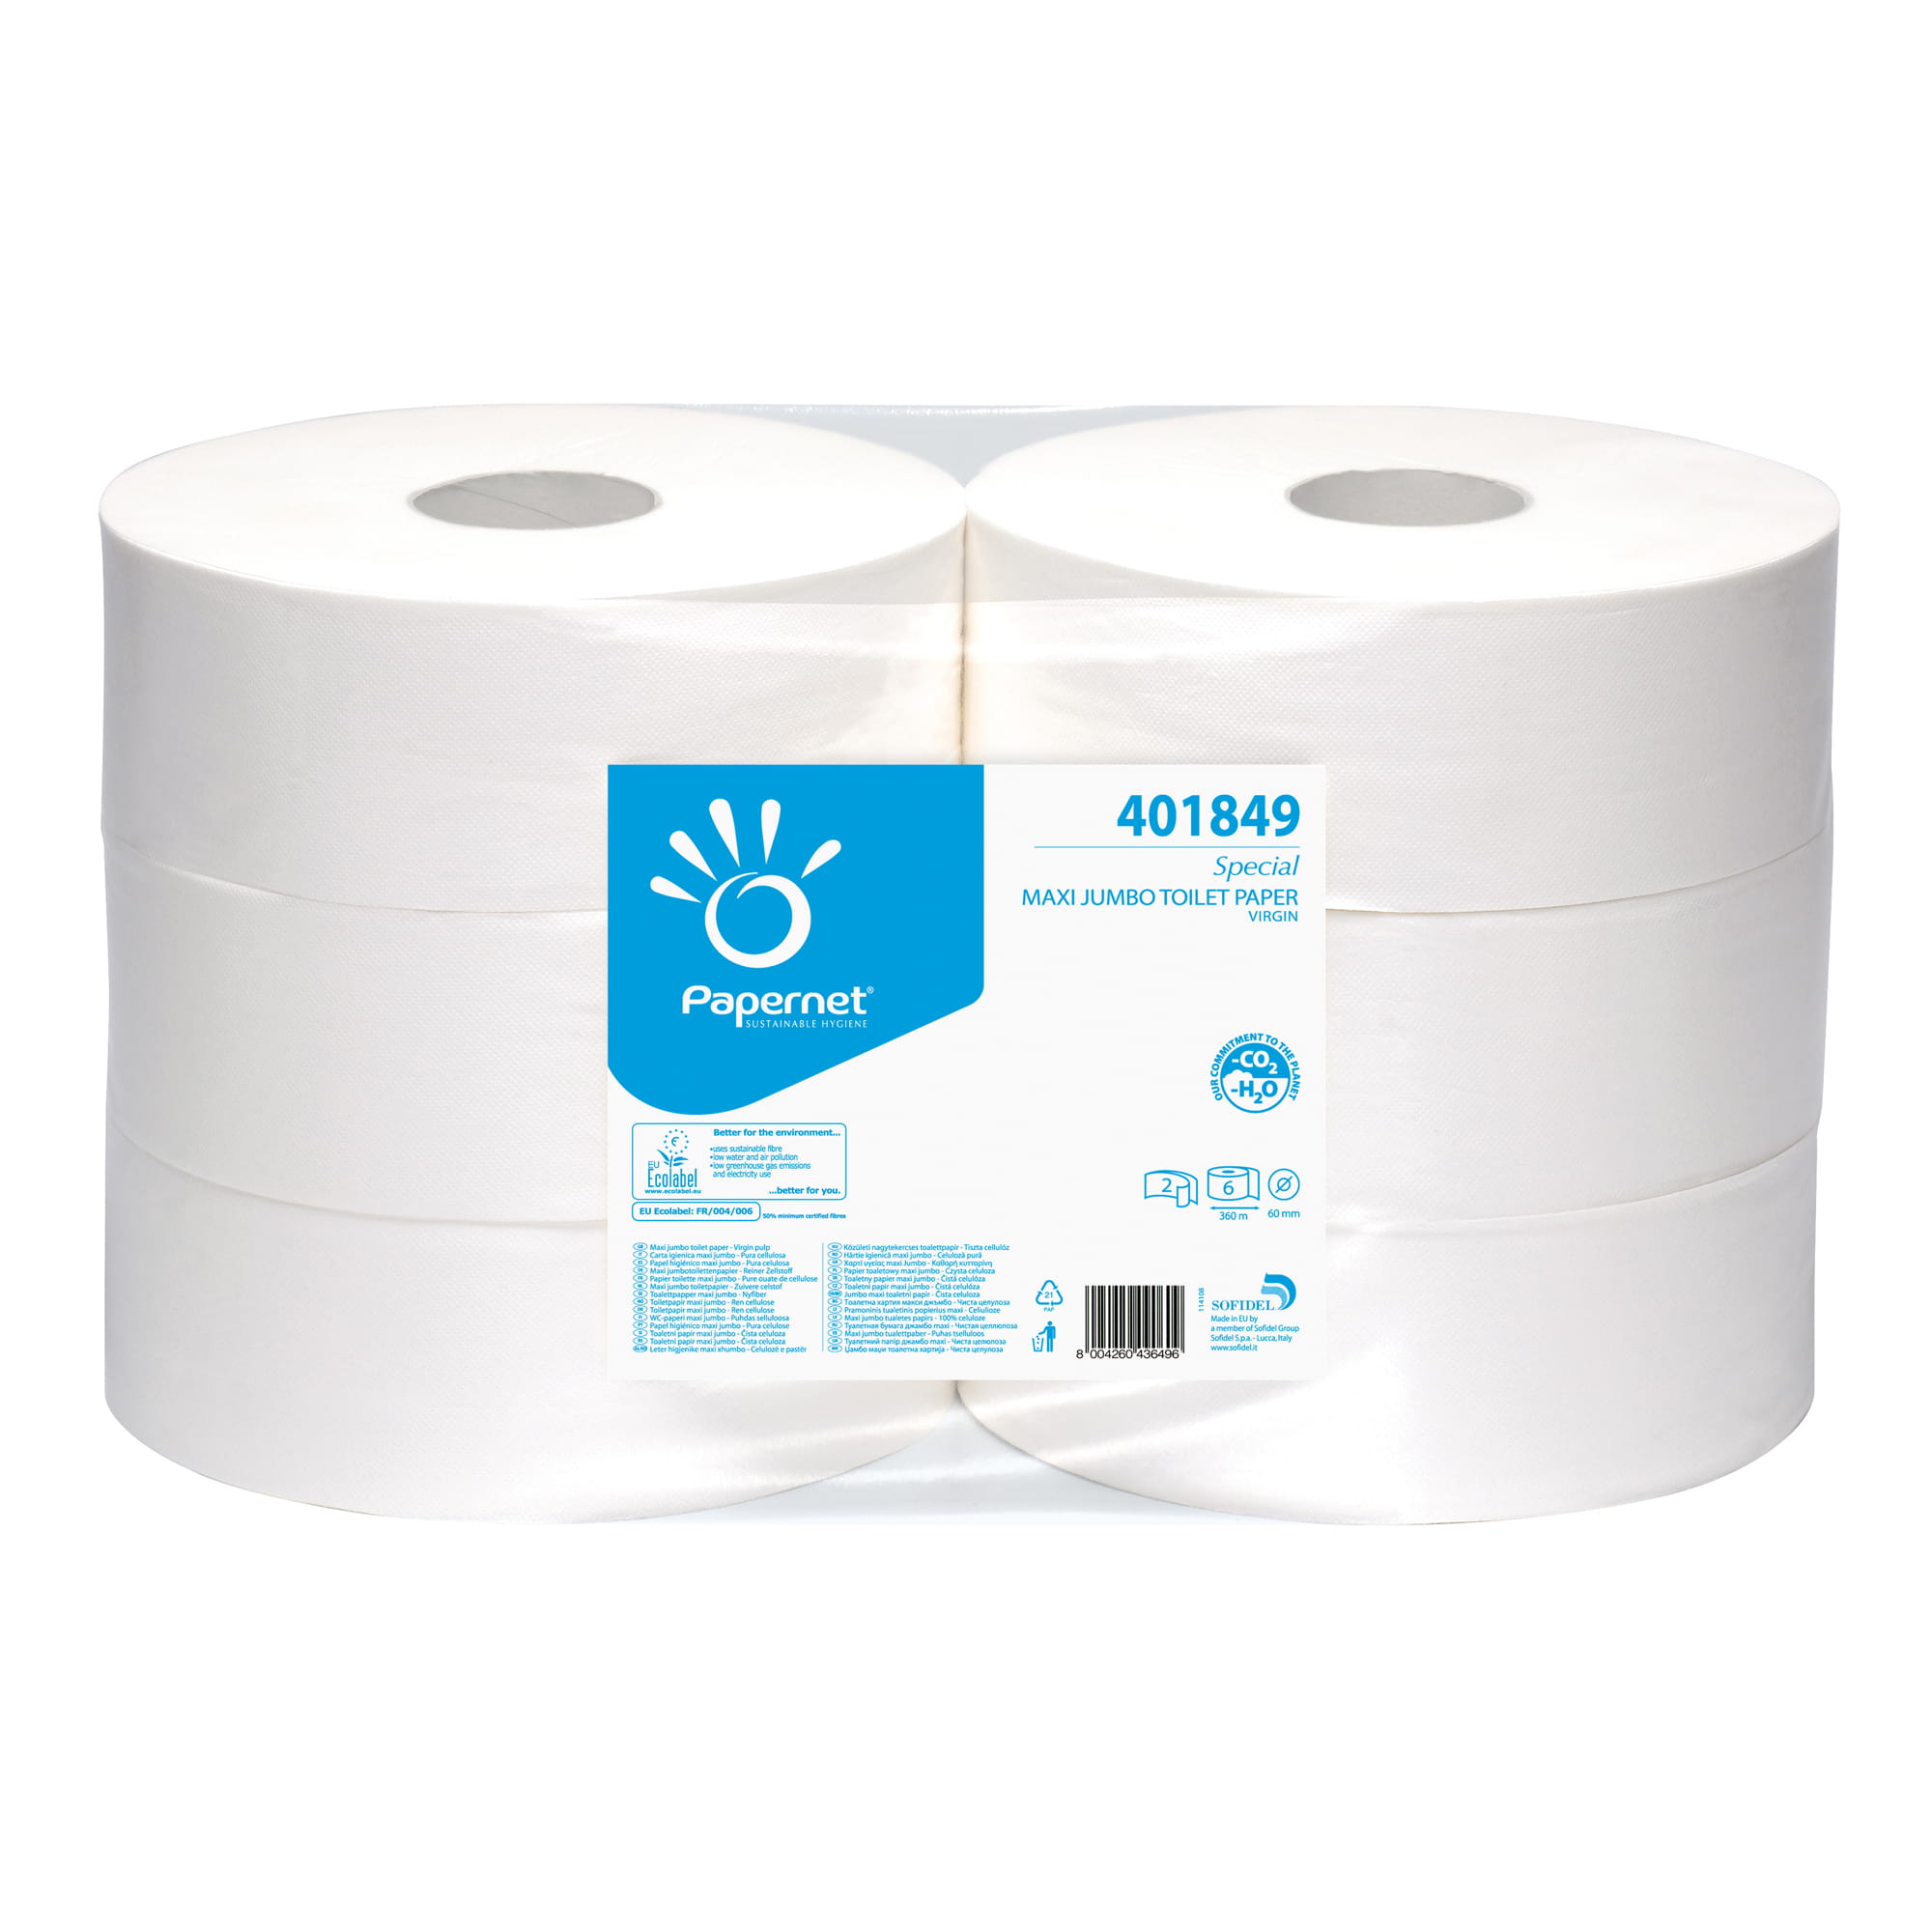 Papernet Toilettenpapier Maxi Jumbo 2-lagig 360 Meter 6 Rollen 401849_1